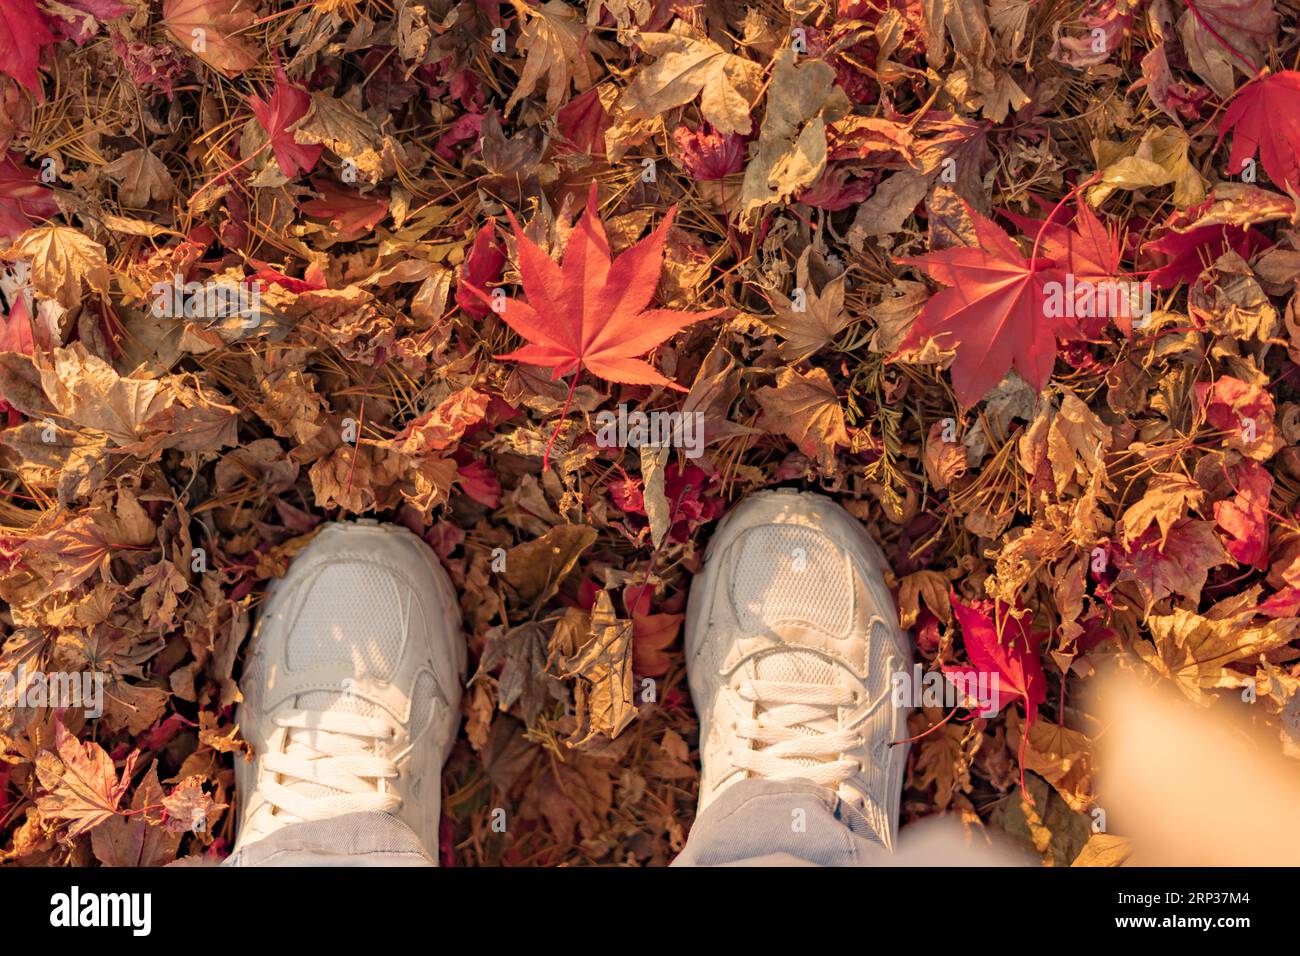 Los pies de una persona en zapatillas blancas de pie sobre las hojas caídas de otoño, mostrando una hoja de arce roja caída Foto de stock